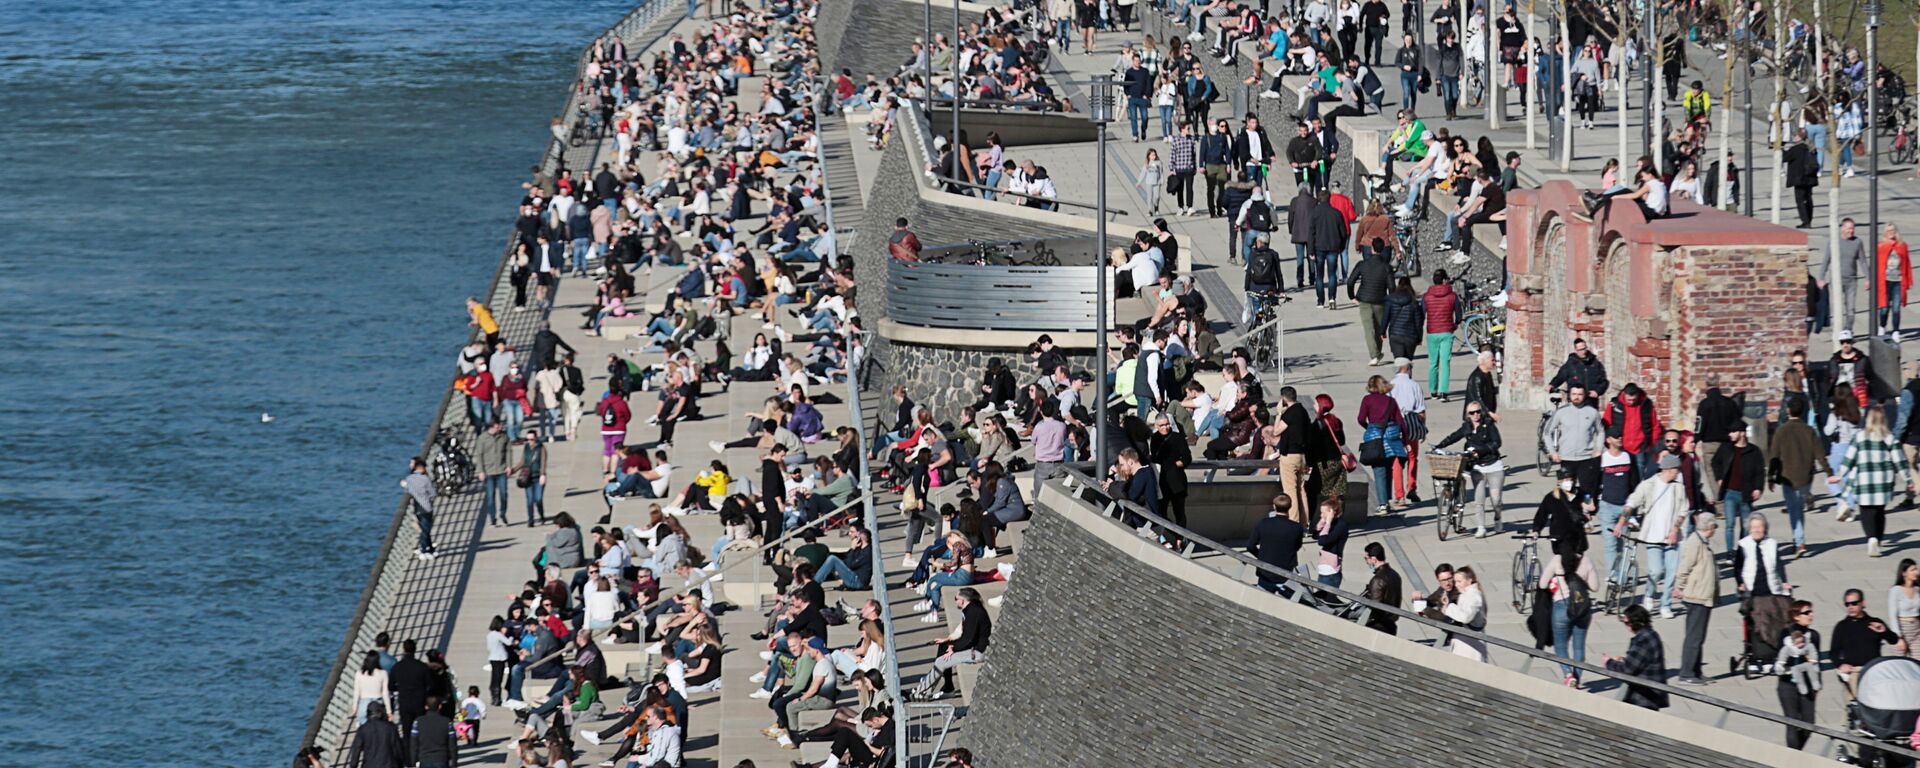 يقضي الناس وقتًا تحت أشعة الشمس على ضفاف نهر الراين وسط جائحة كورونا (كوفيد-19) في مدينة كولونيا في ألمانيا، 21 فبراير 2021. - سبوتنيك عربي, 1920, 25.05.2021